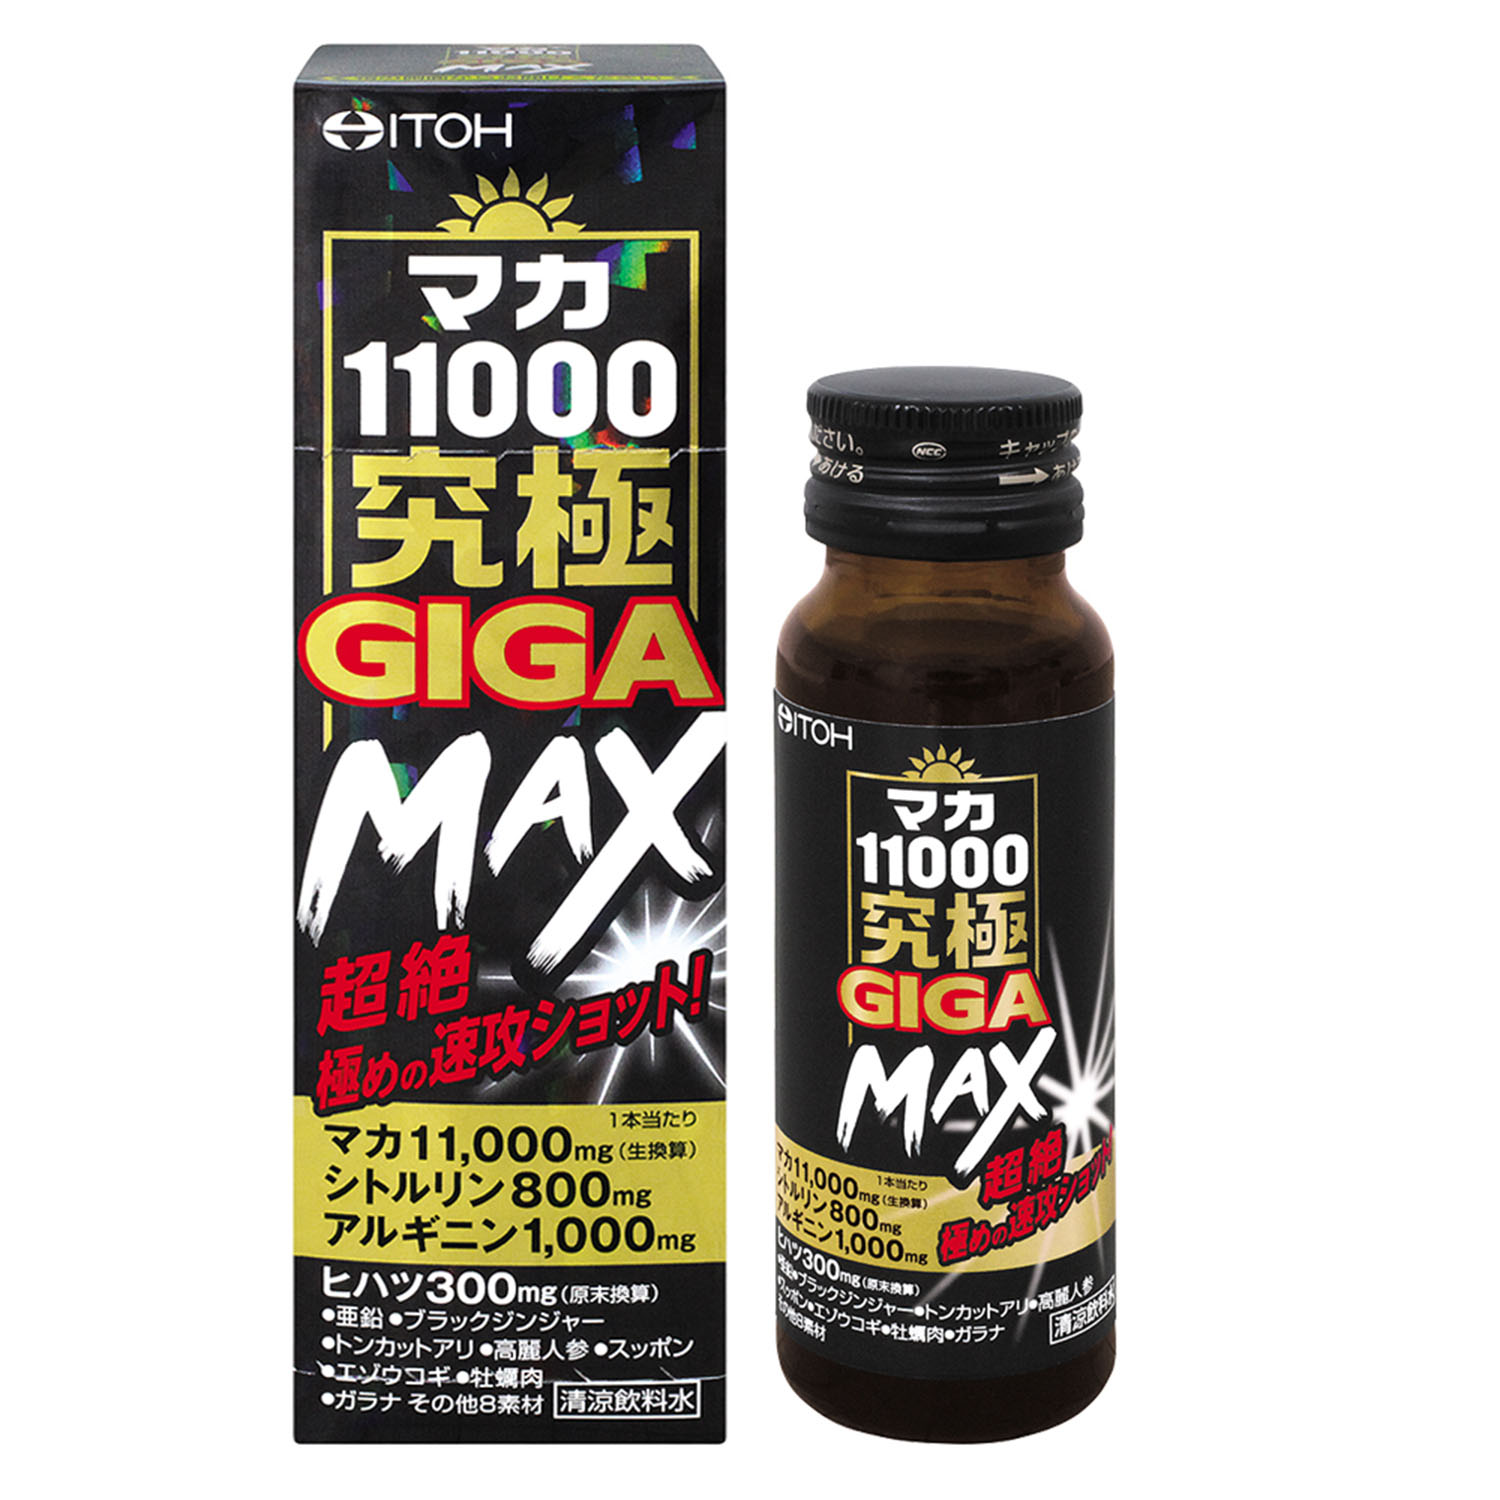 213円 激安の 井藤漢方製薬 マカ6600極感MEGA MAX 50ml